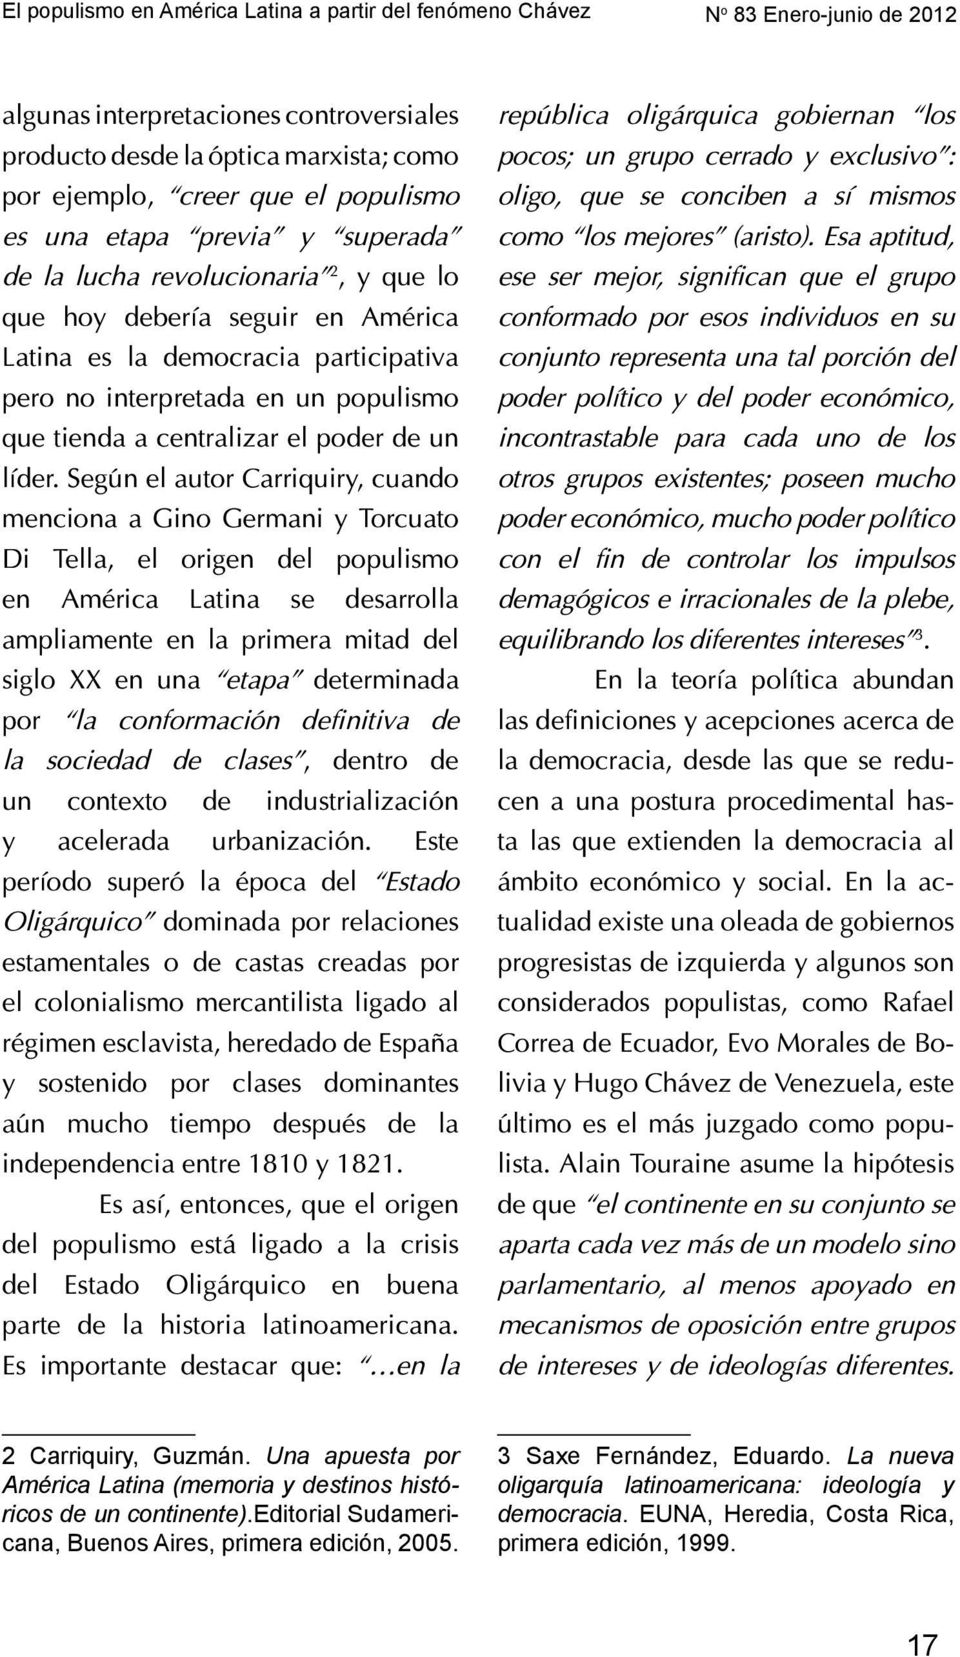 editorial Sudamericana, Buenos Aires, primera edición, 2005. 3 Saxe Fernández, Eduardo.